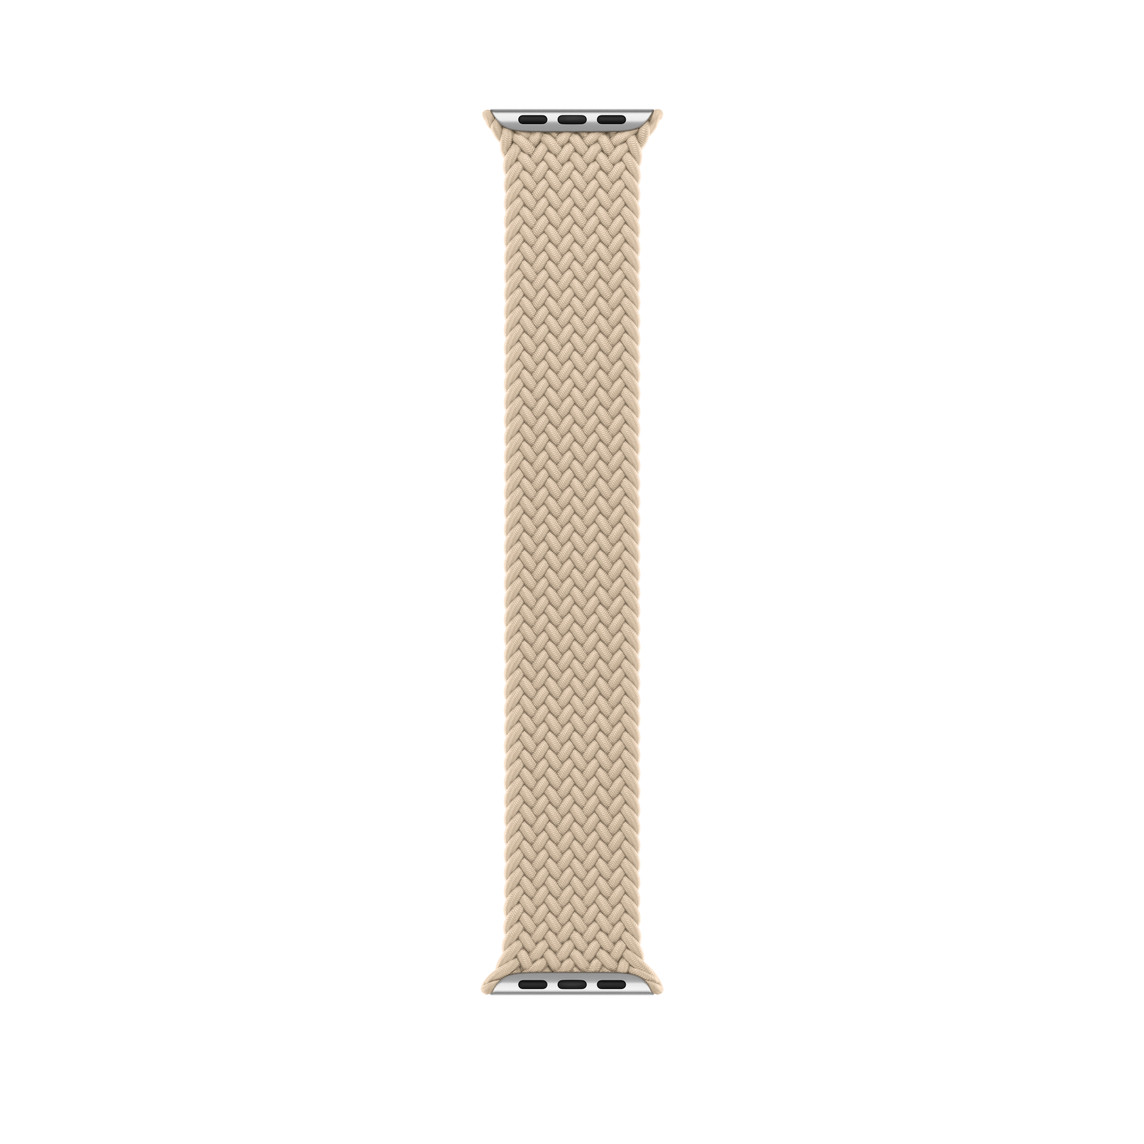 Correa uniloop trenzada beige, hecha de poliéster tejido e hilos de silicona sin hebillas ni cierres